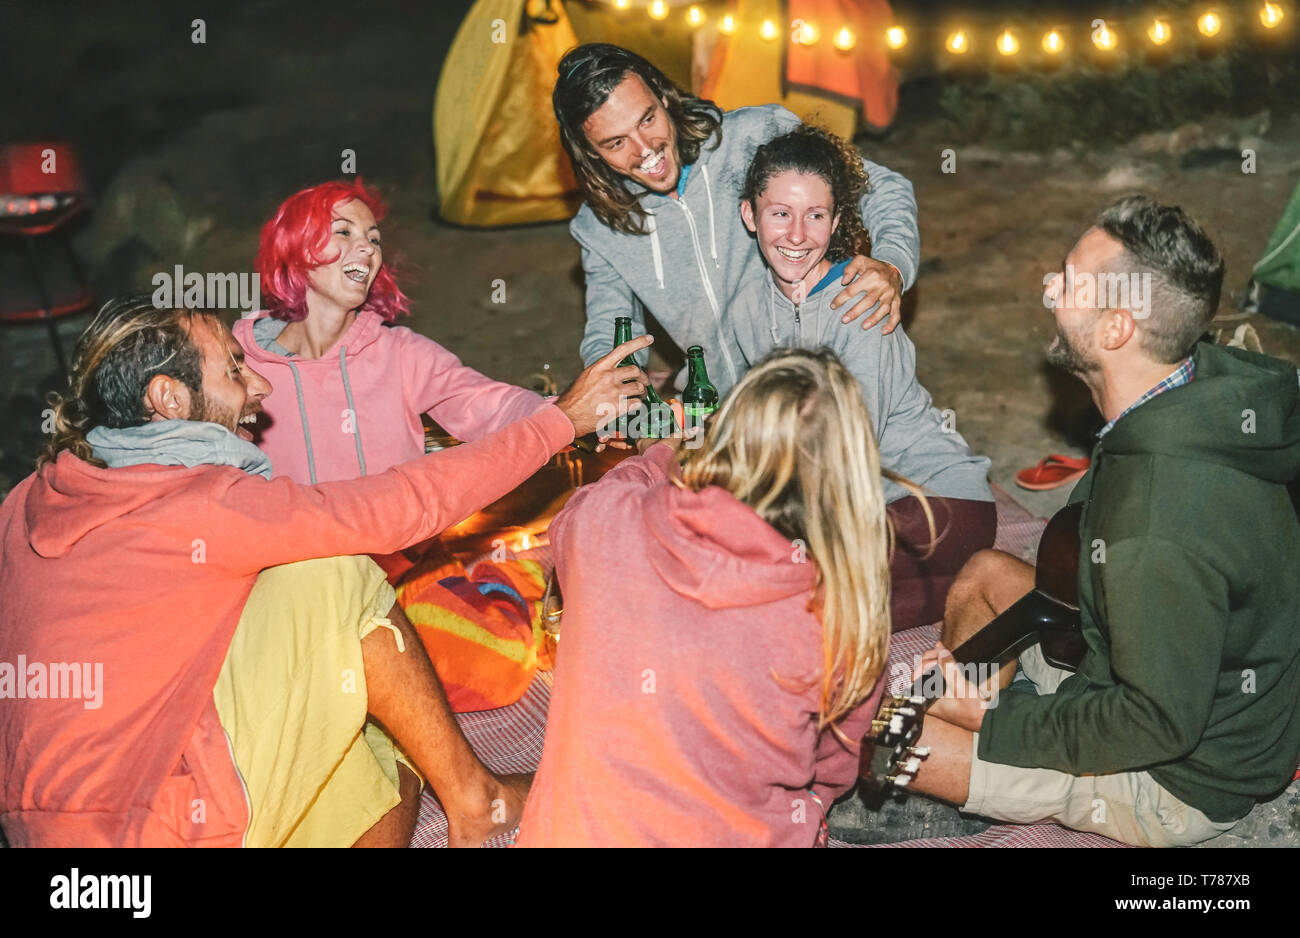 Groupe d'amis s'amuser avec acclamations bières sur la plage avec tente de nuit - Heureux les jeunes jouent de la guitare et rire ensemble Banque D'Images